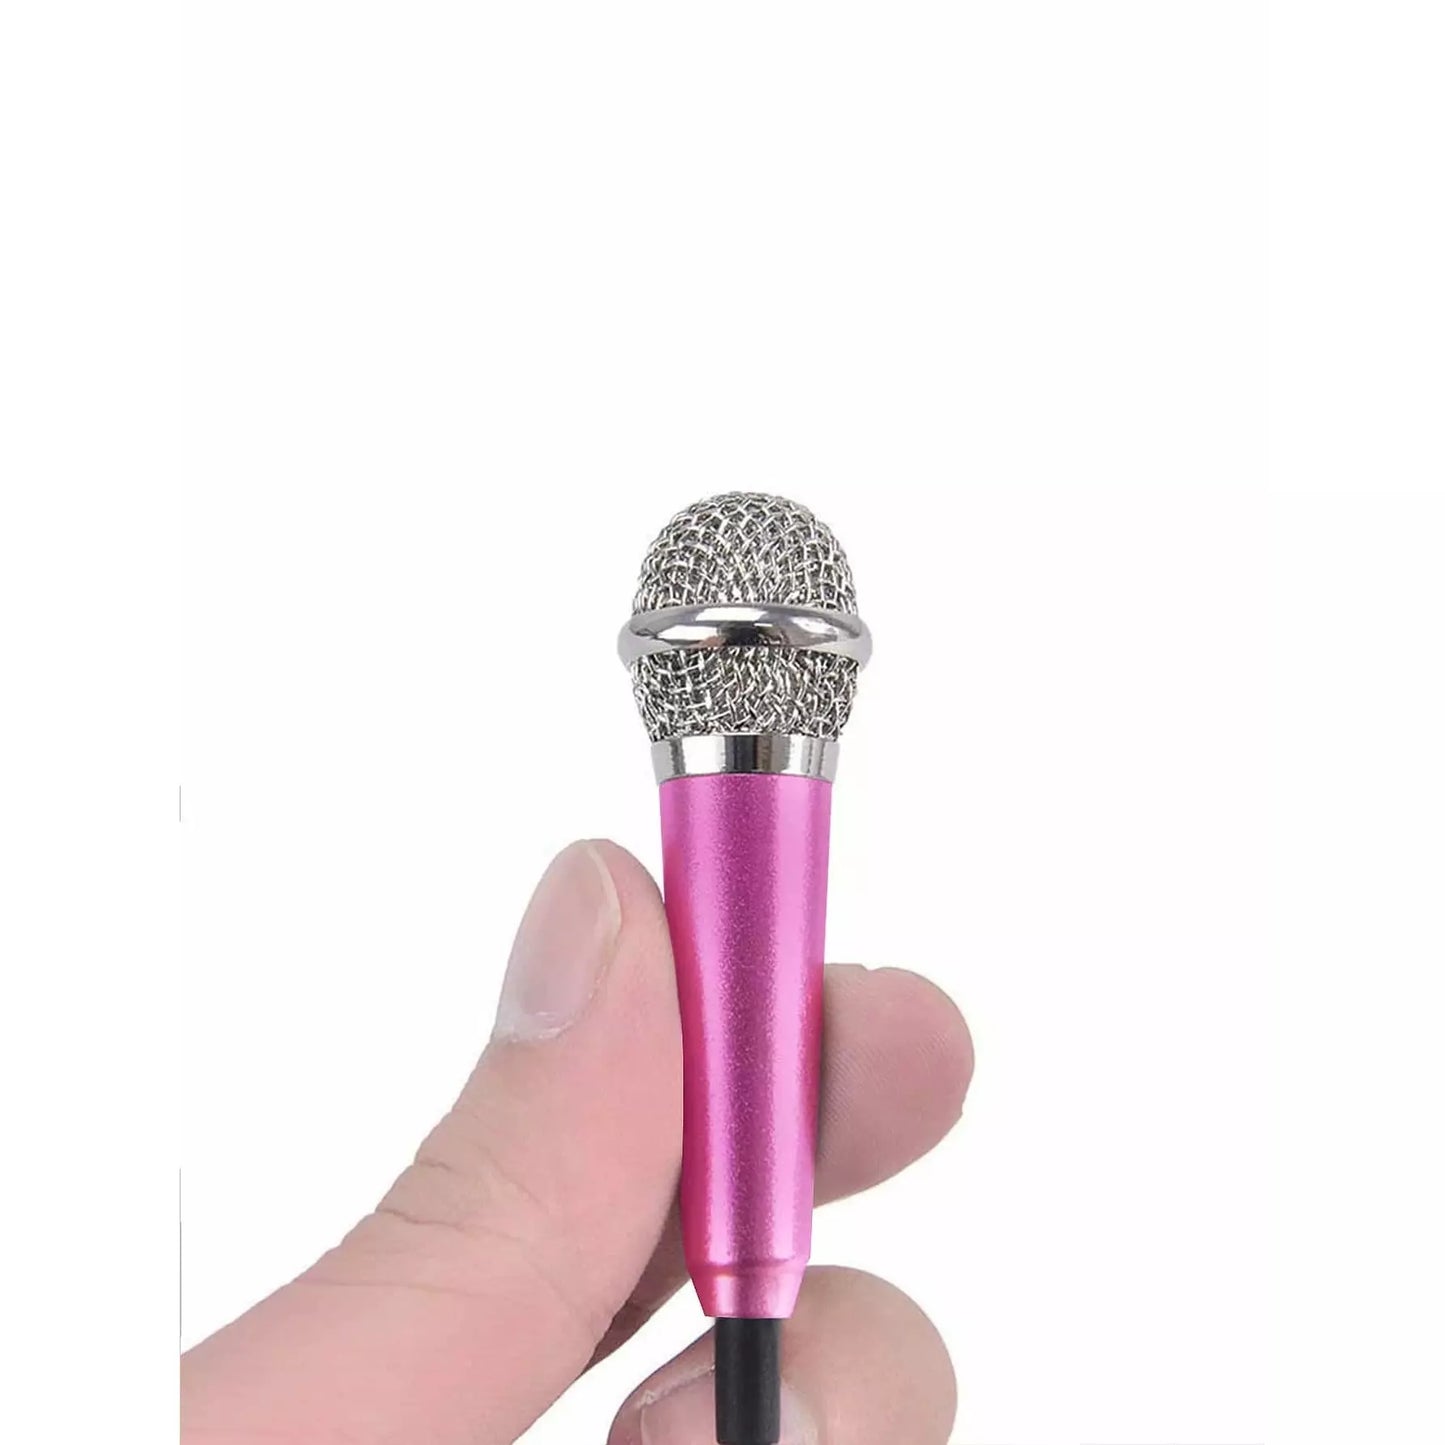 Tiny Microphone